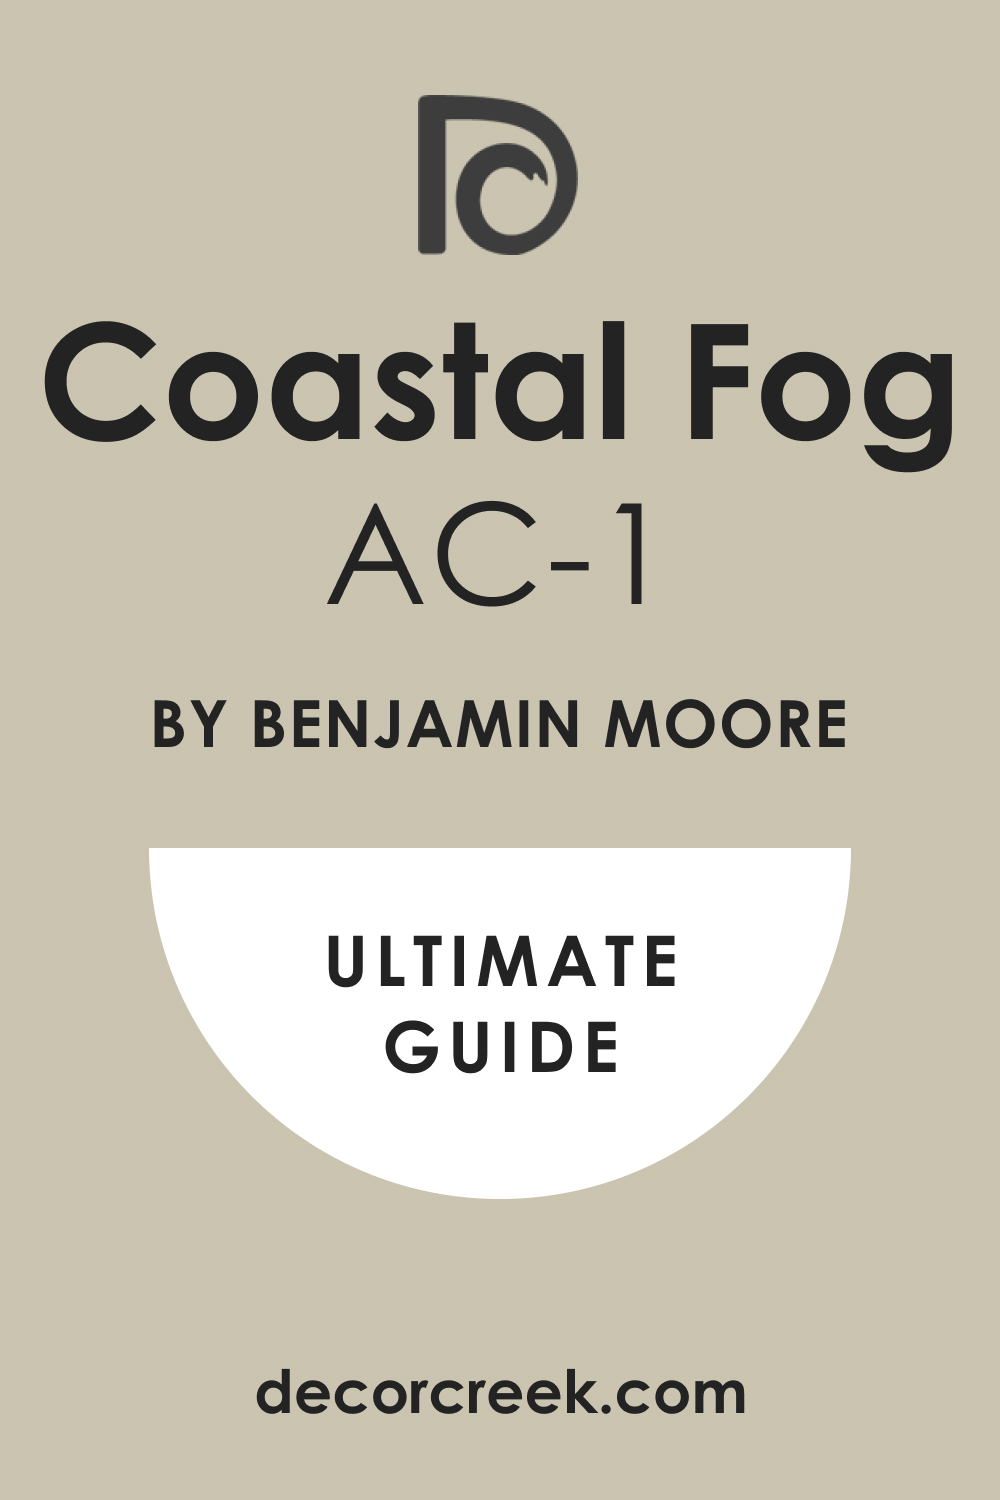 Ultimate Guide of Coastal Fog AC-1 